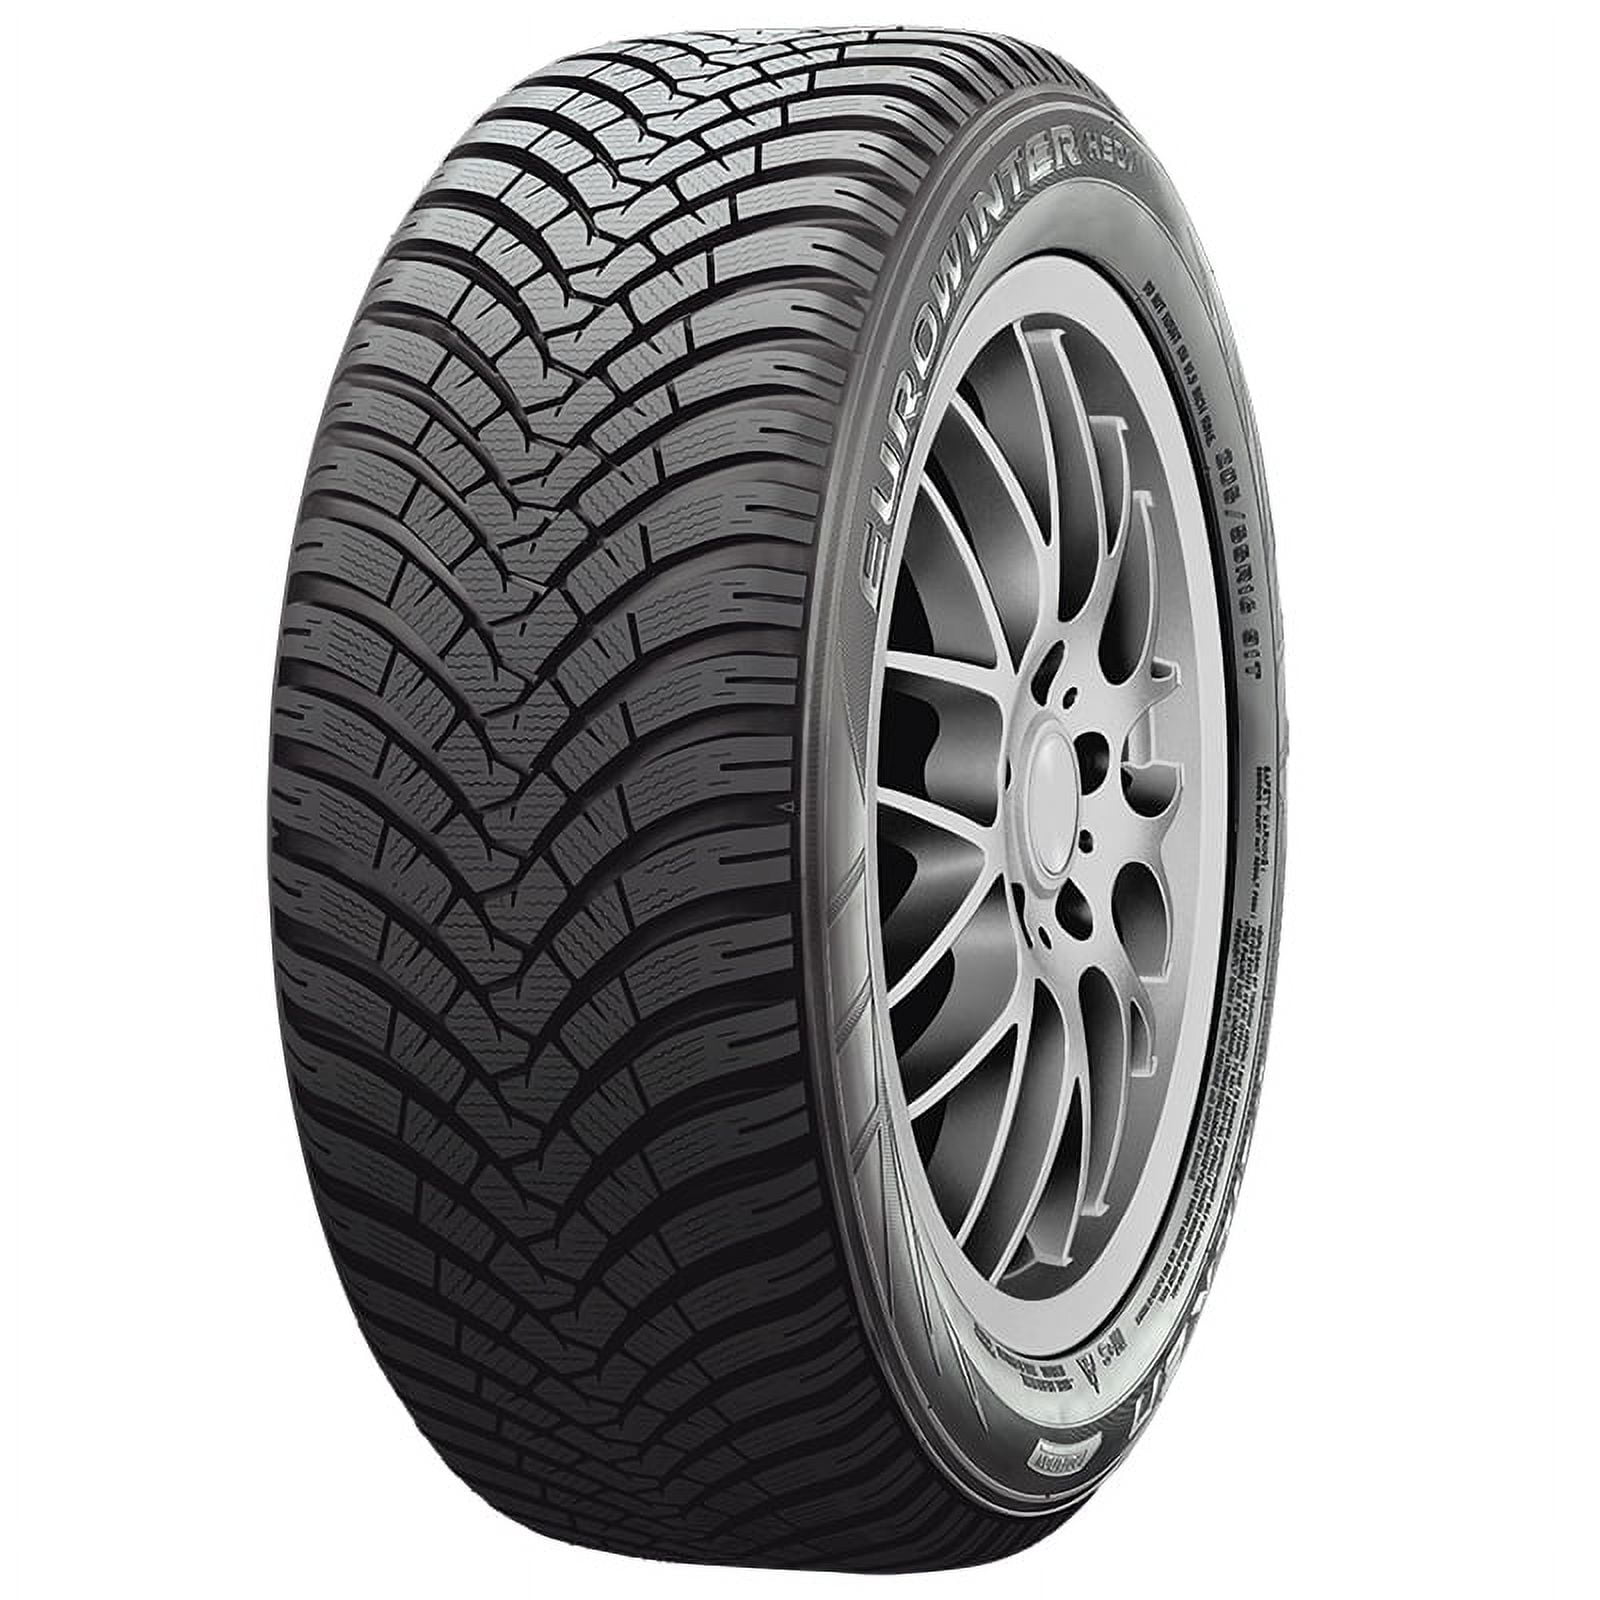 Falken Eurowinter HS01 205/45R17XL 88V BW Winter Studless Tire